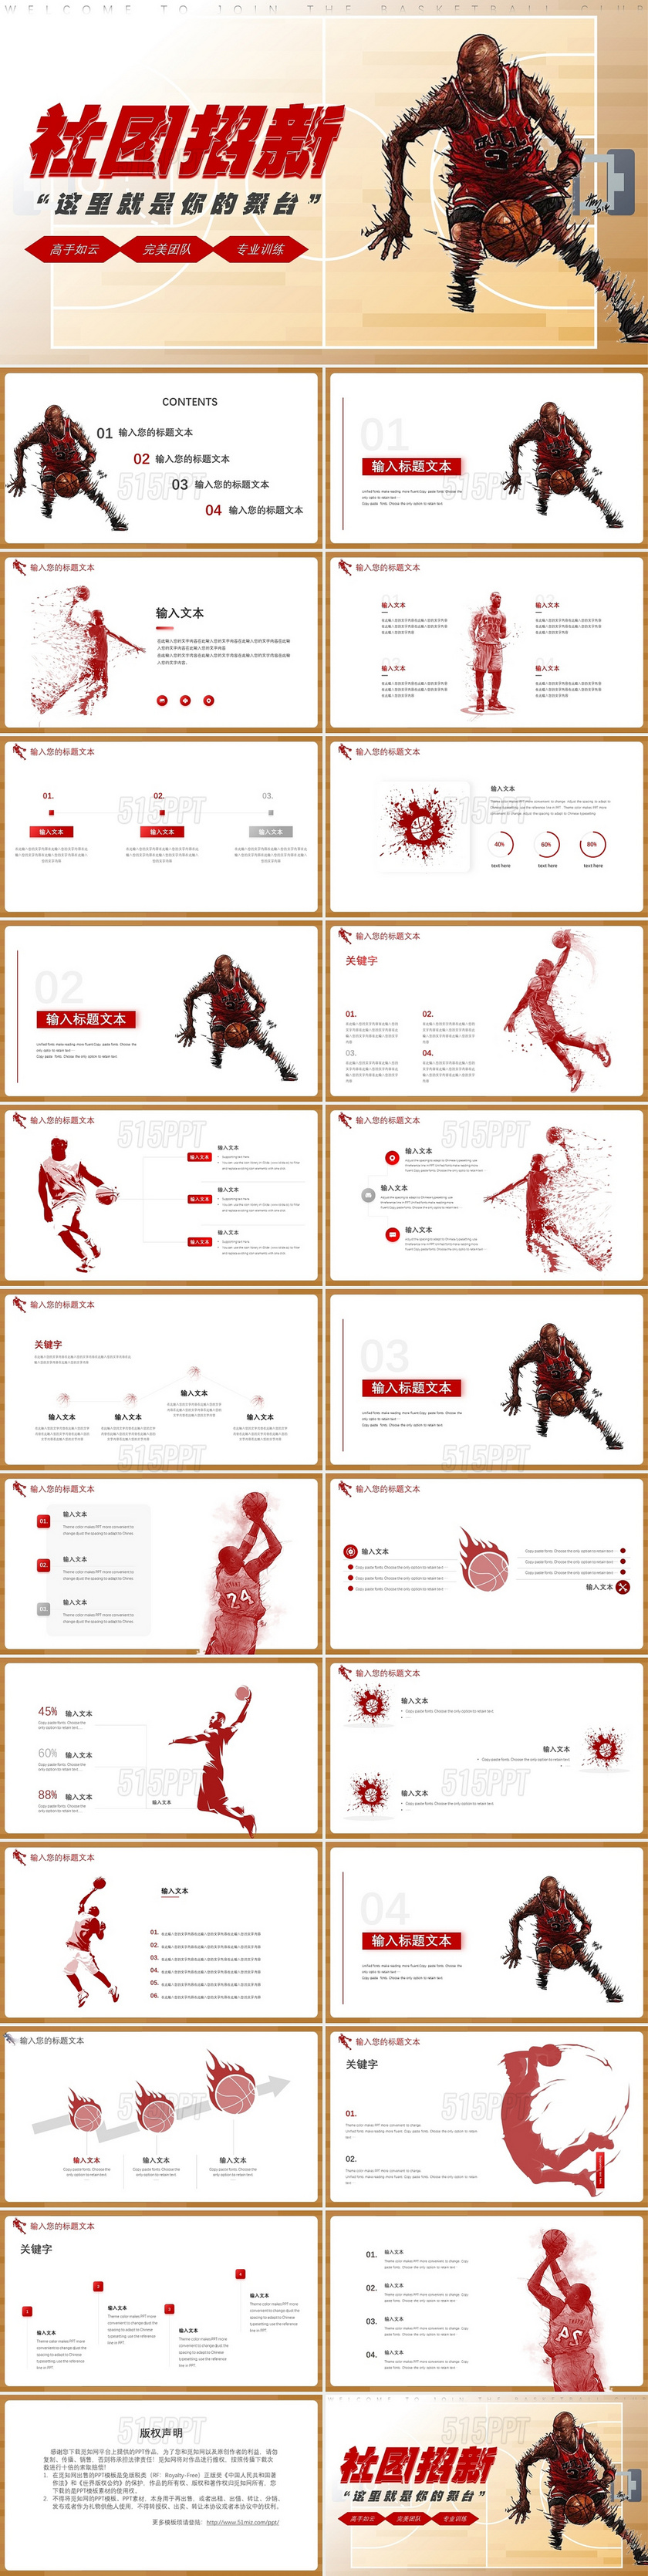 红色激情篮球社团招新方案PPT模板